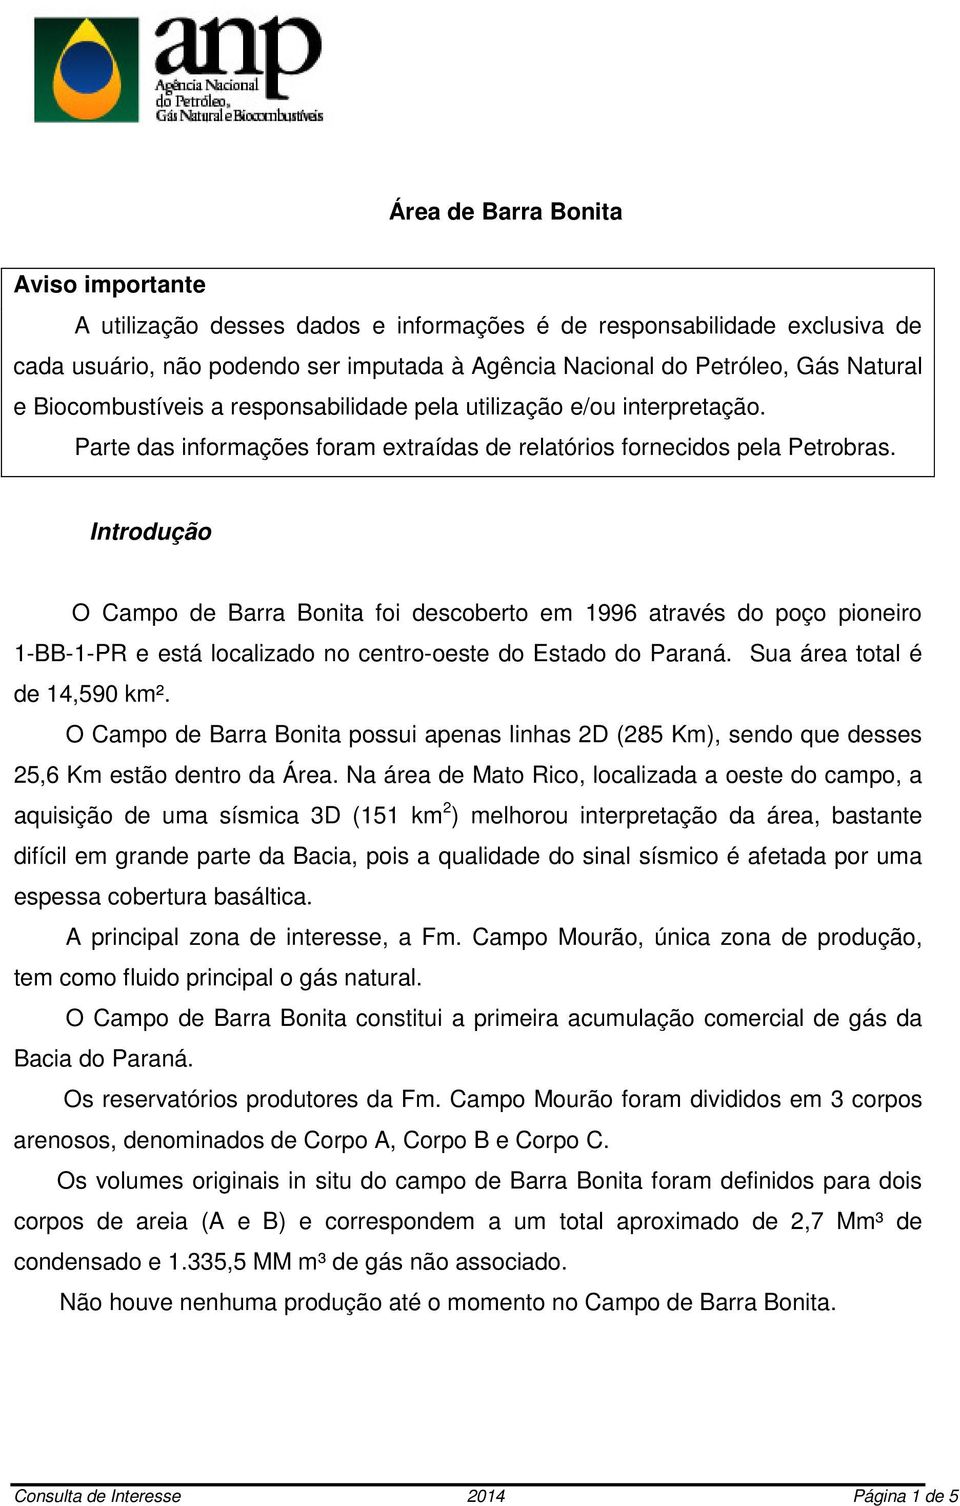 Introdução O Campo de Barra Bonita foi descoberto em 1996 através do poço pioneiro 1-BB-1-PR e está localizado no centro-oeste do Estado do Paraná. Sua área total é de 14,590 km².